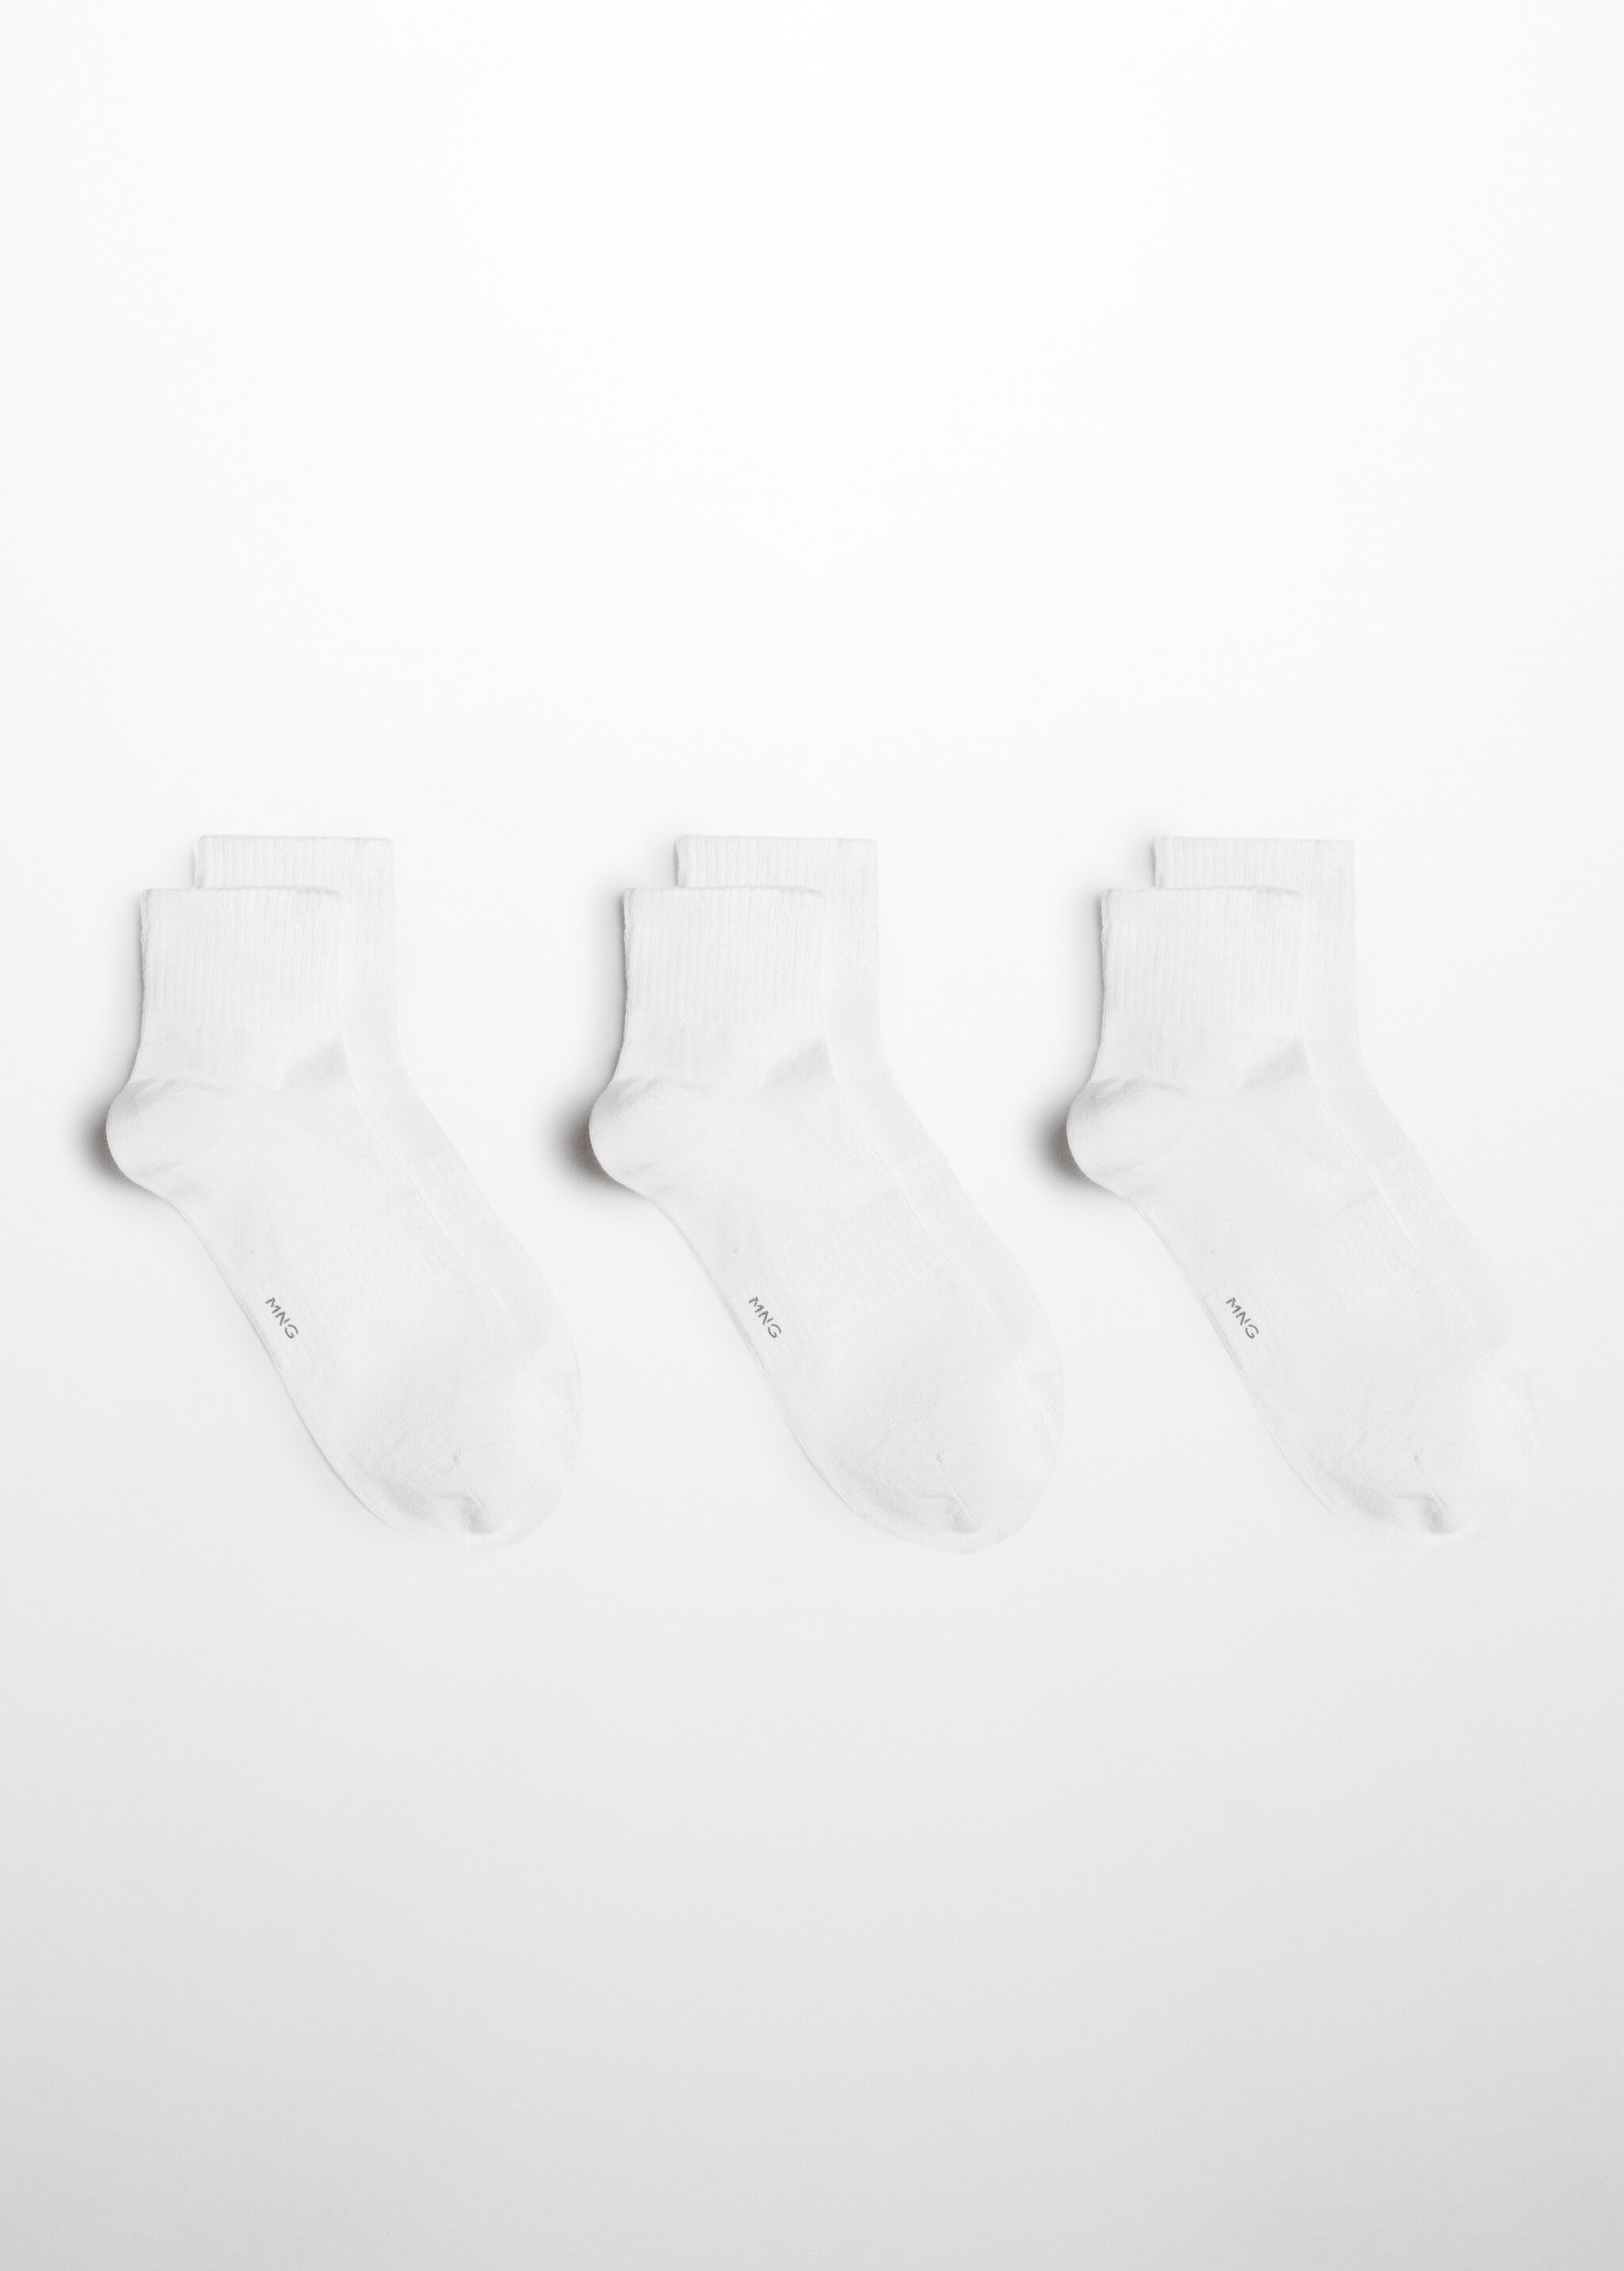 Pamuklu çizgi dokuma 3’lü çorap paketi - Modelsiz ürün